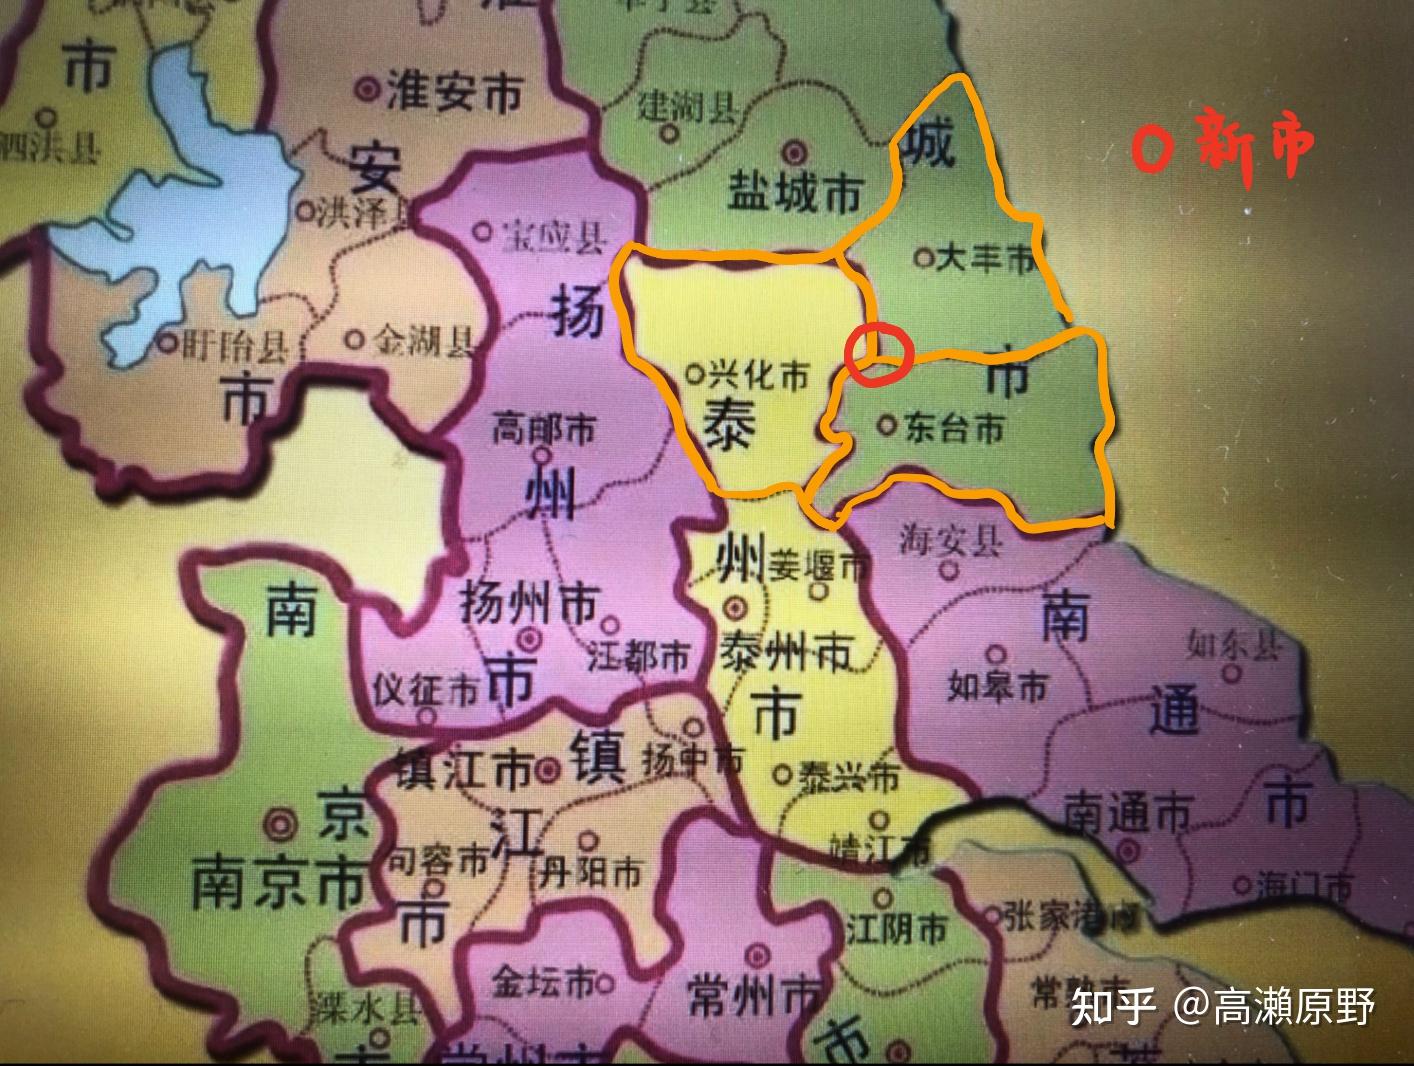 如果重新划分江苏地图,会不会促进这些地区的发展呢?